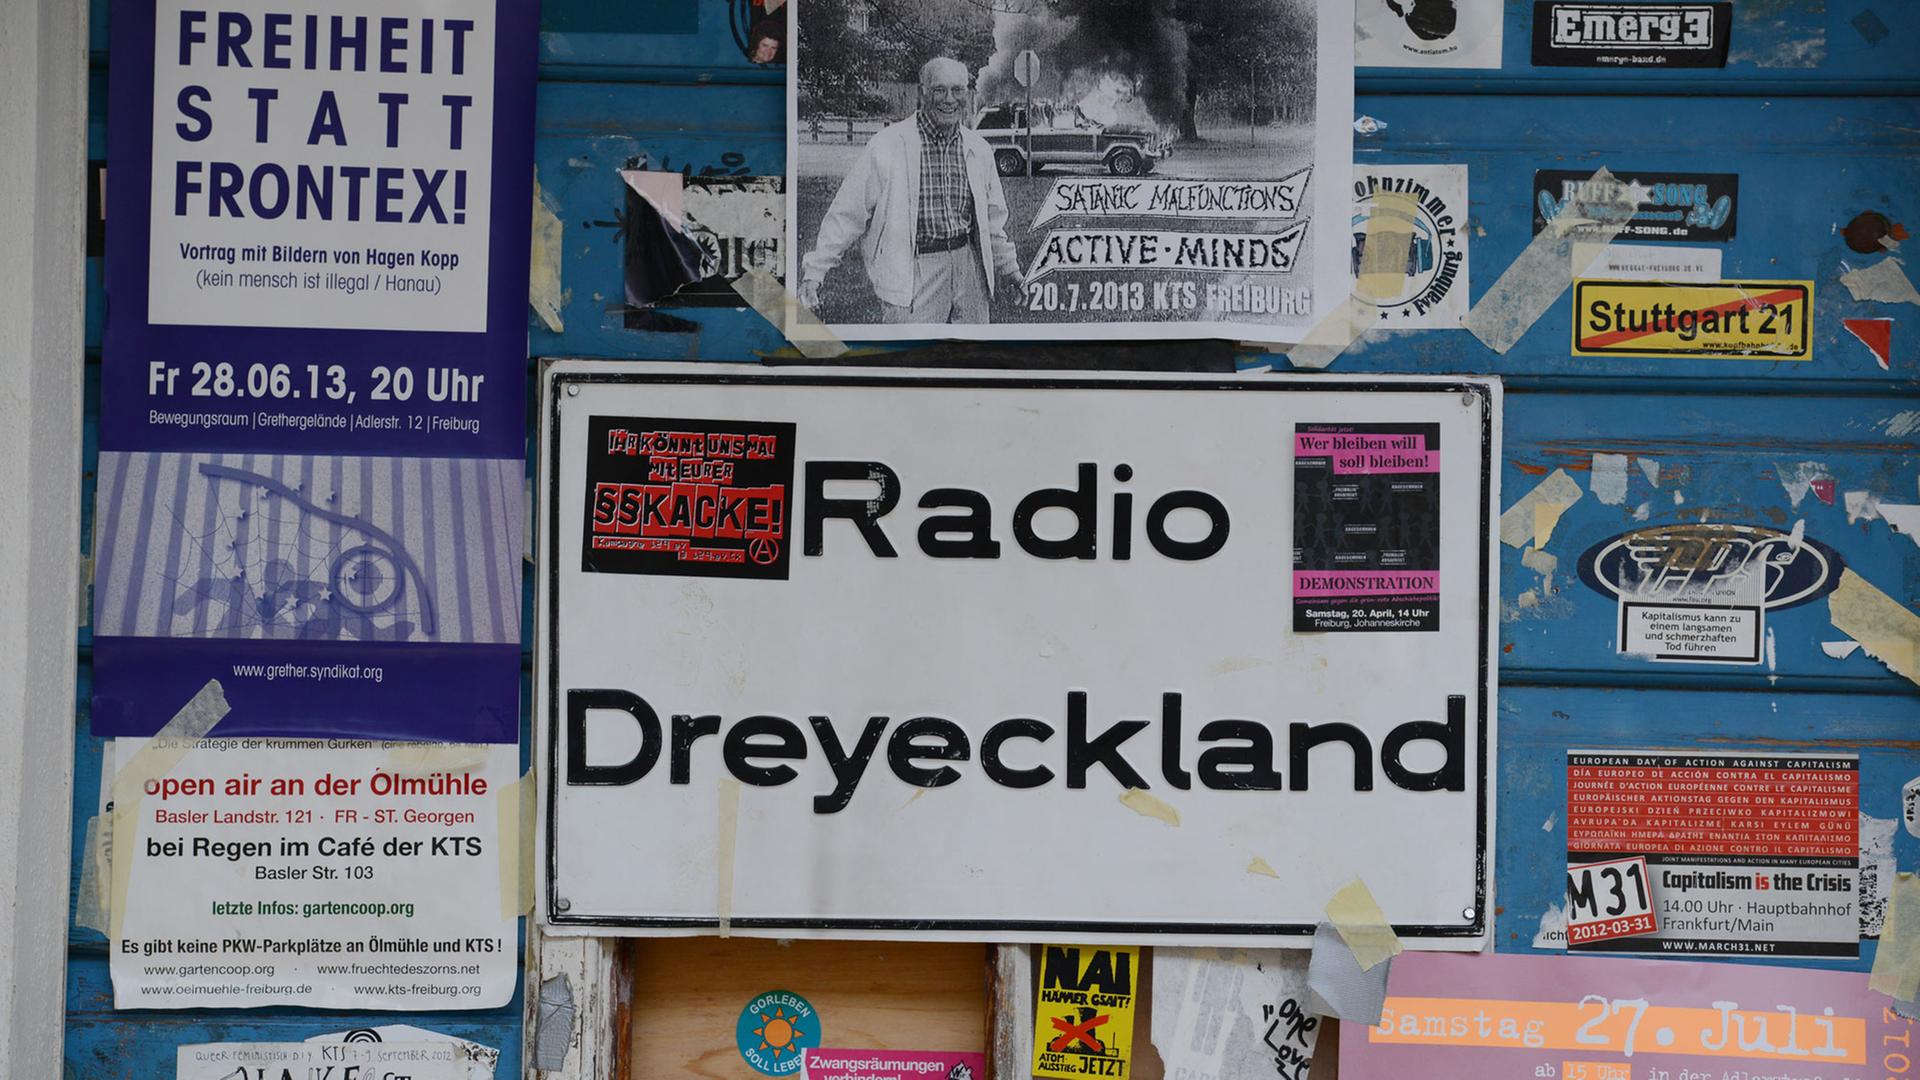 Das Logo von "Radio Dreyeckland" ist in Freiburg (Baden-Württemberg) an einer Tür zu sehen. Der Sender in Freiburg, der aus der badischen und elsässischen Anti-Atomkraft-Bewegung der 1970er Jahre entstanden ist, ist das älteste freie Radio Deutschlands. Er funkte in den ersten elf Jahren illegal als Piratensender. Vor 25 Jahren, im Juli 1988, erhielt er eine Sendelizenz. Er wurde damit als erstes 